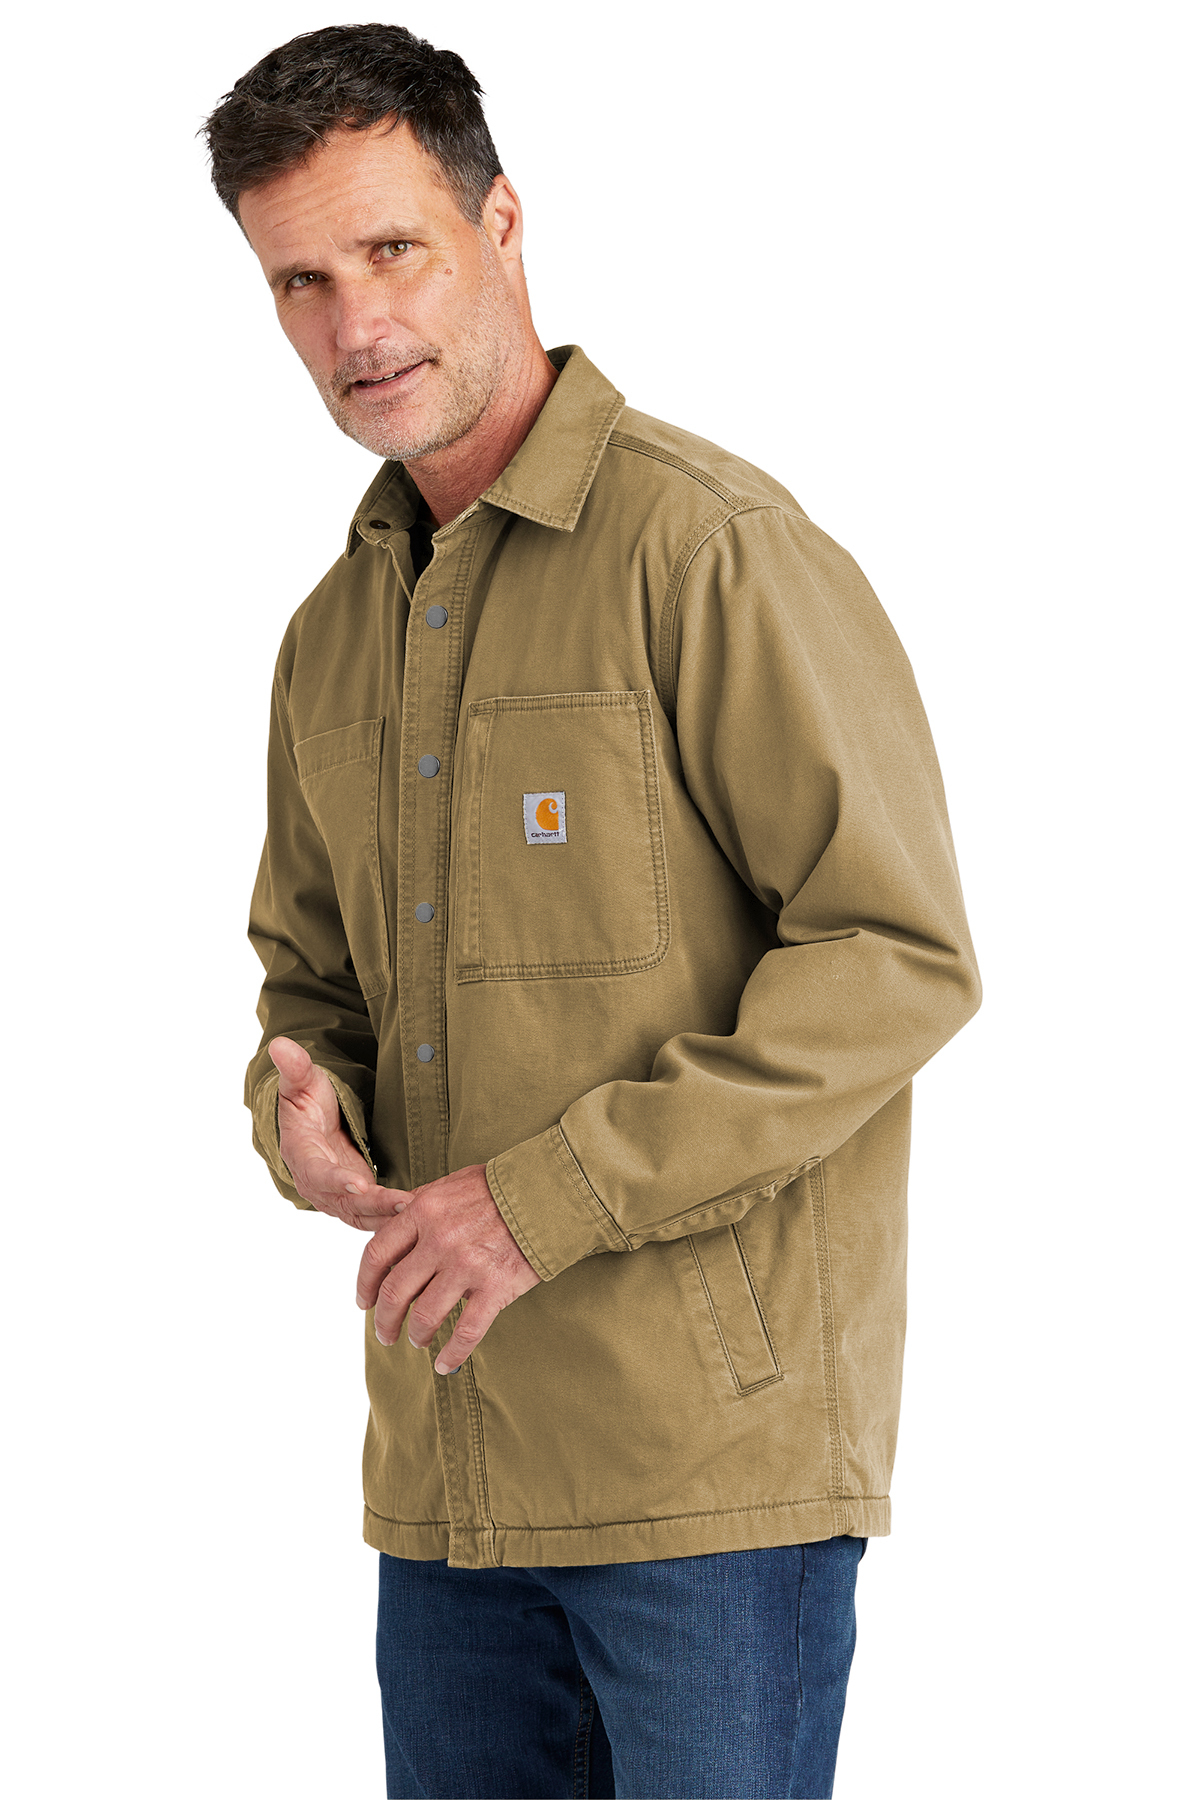 Carhartt Rugged Flex Fleece-Lined Shirt Jac, Product